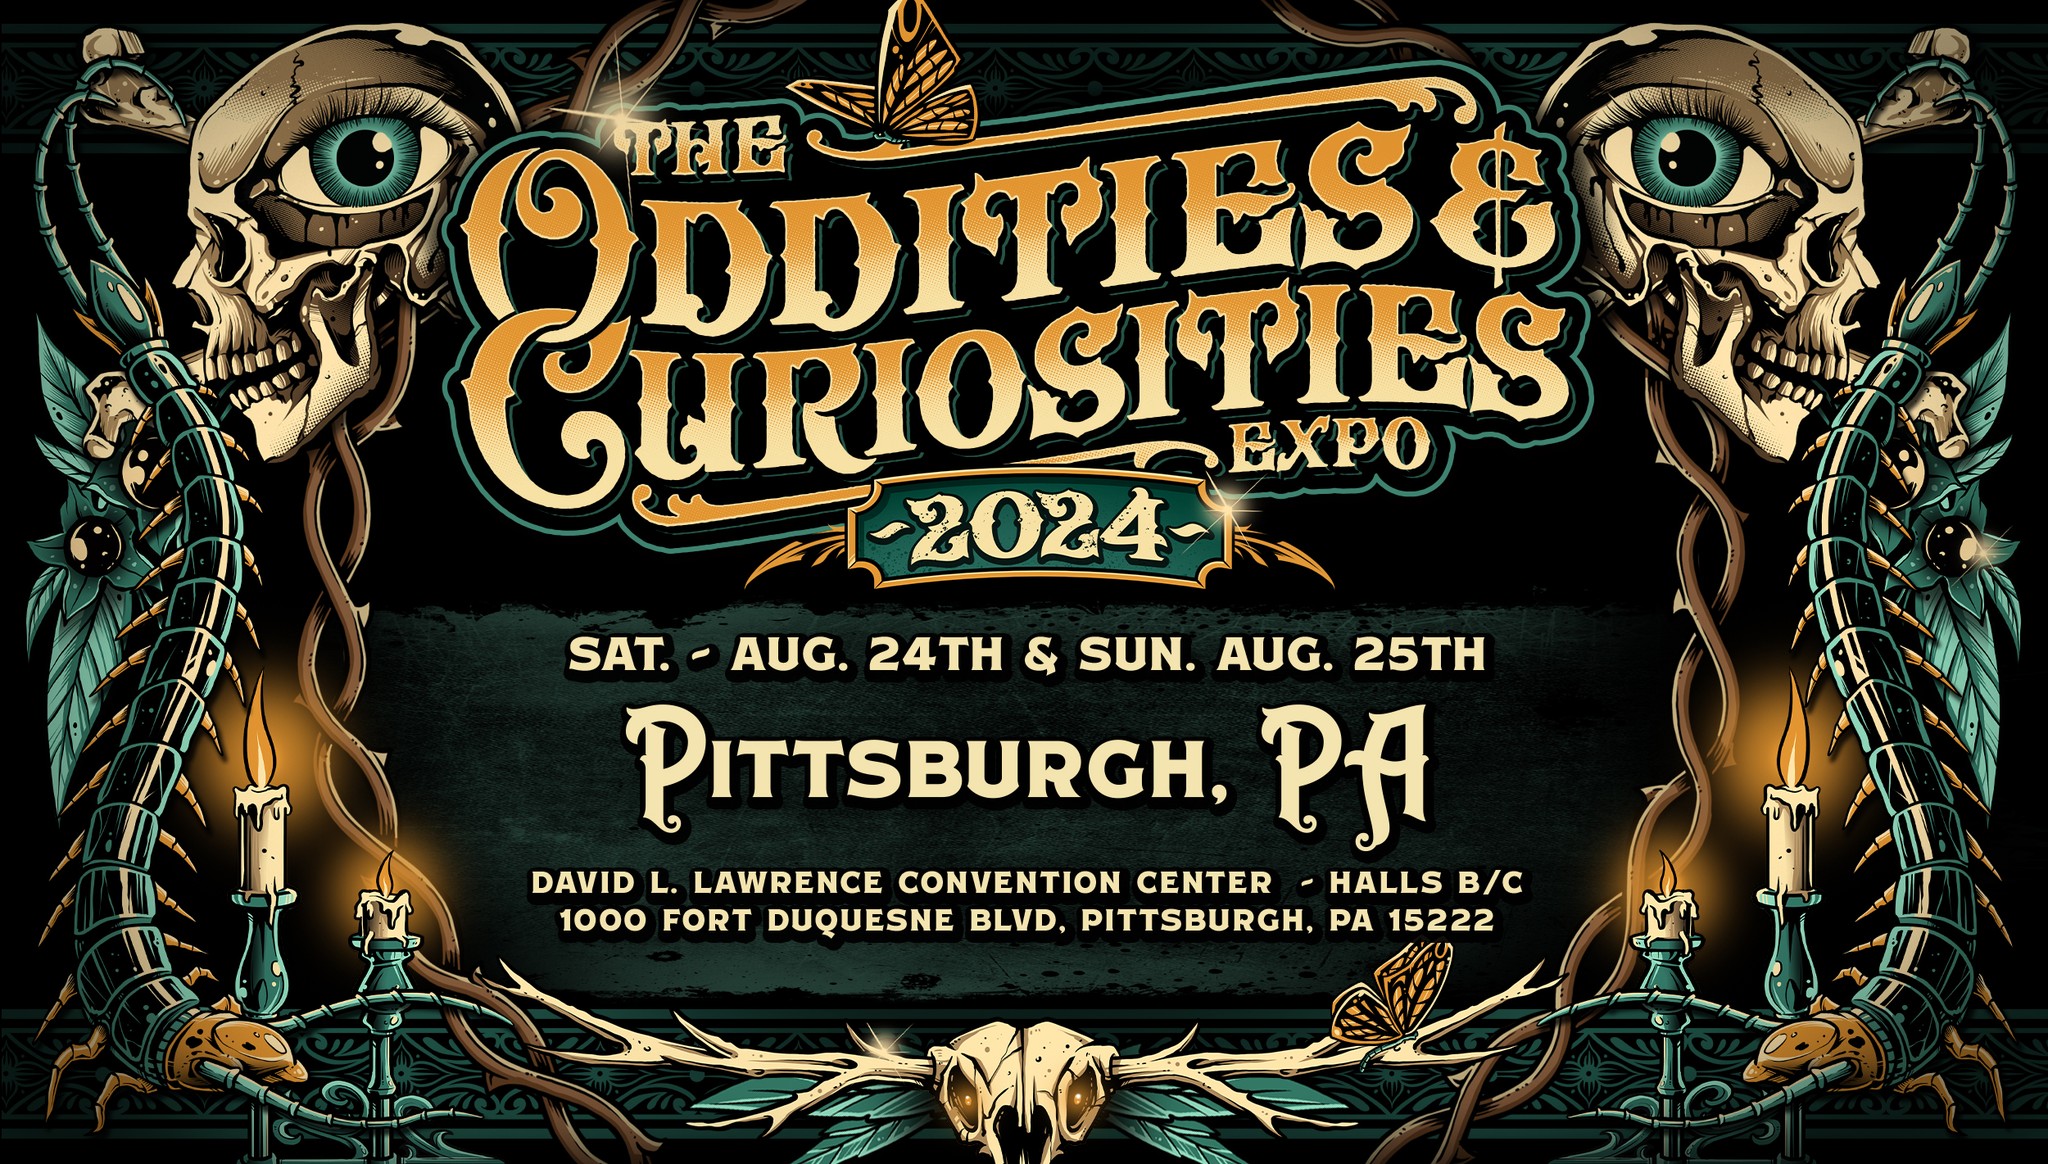 Pittsburgh Oddities & Curiosities Expo 2024